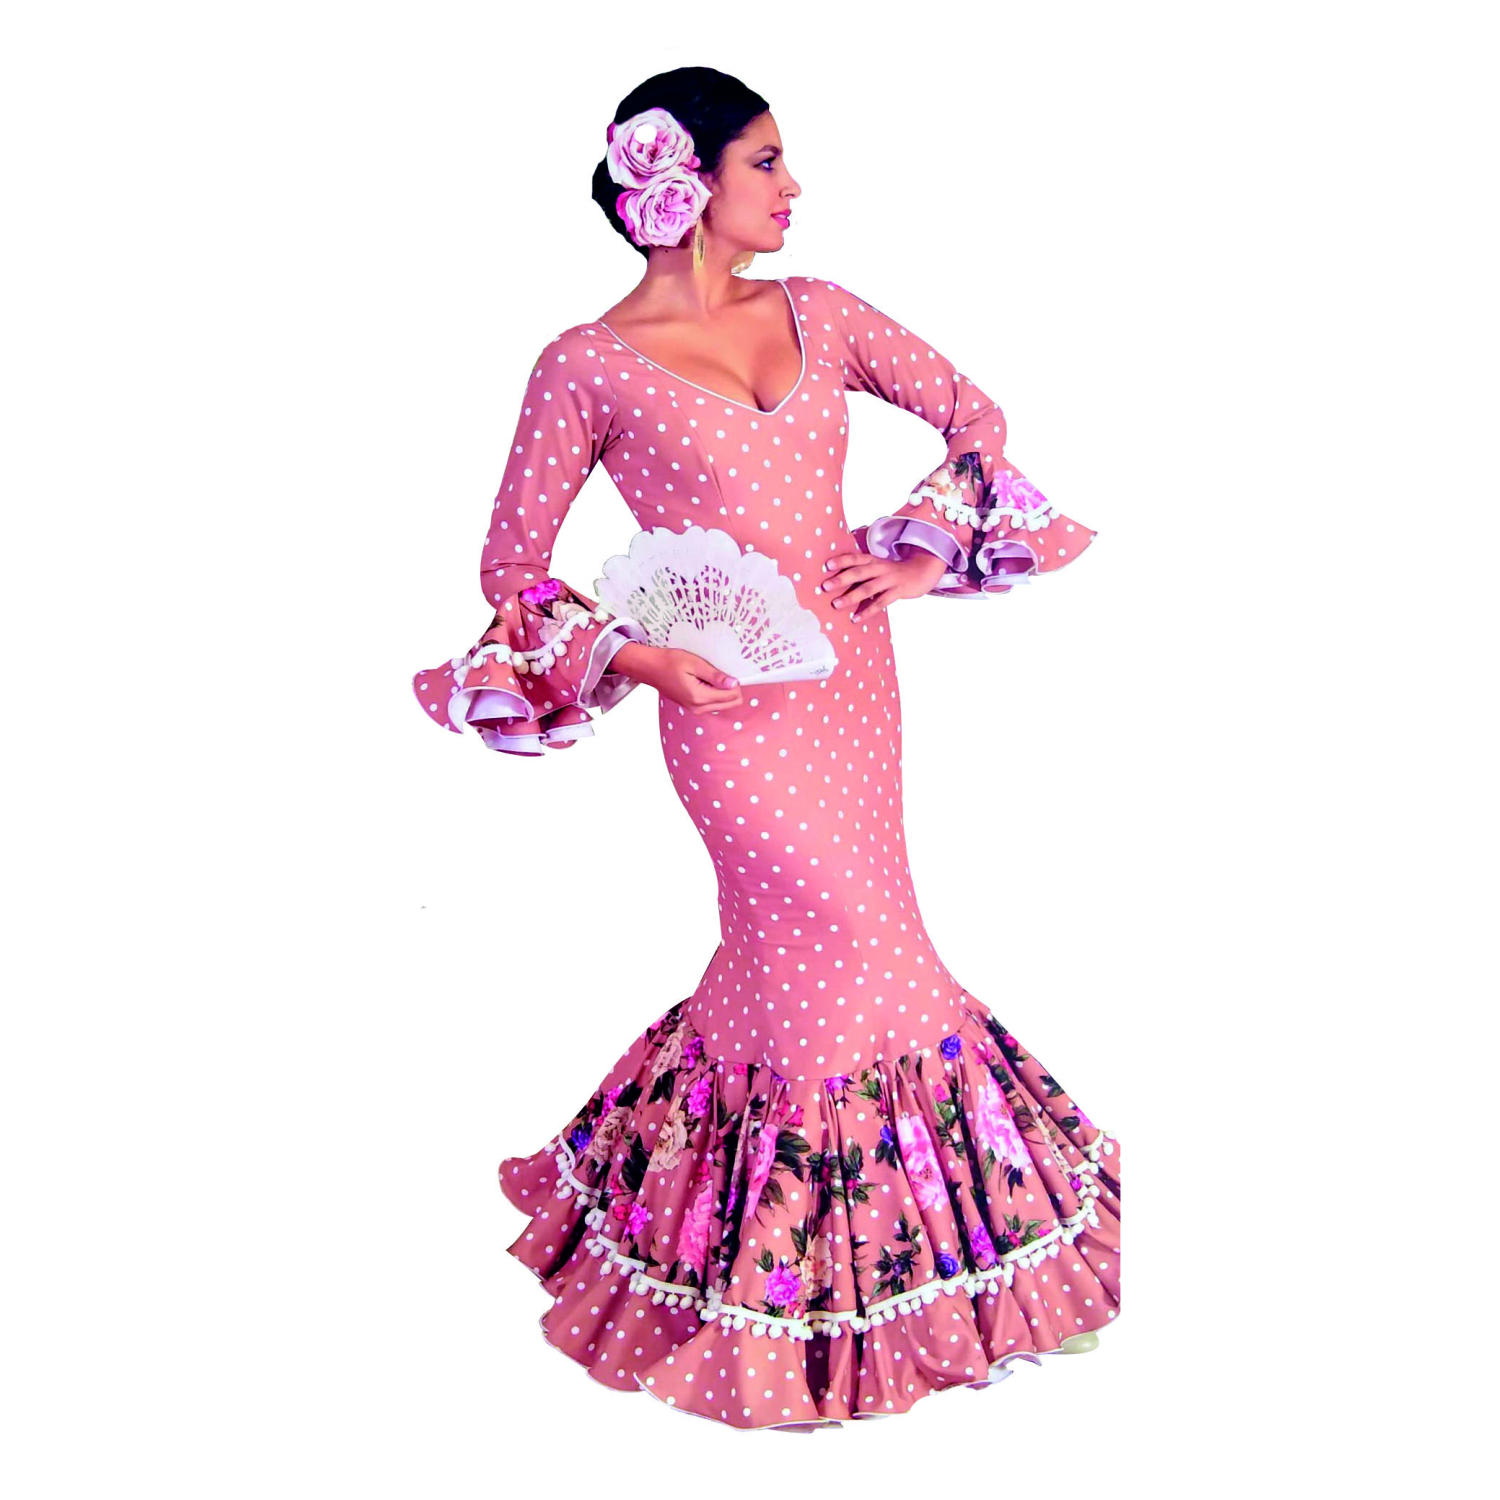 A1 – Vestido modelo Crespón – Raices Danza Flamenco